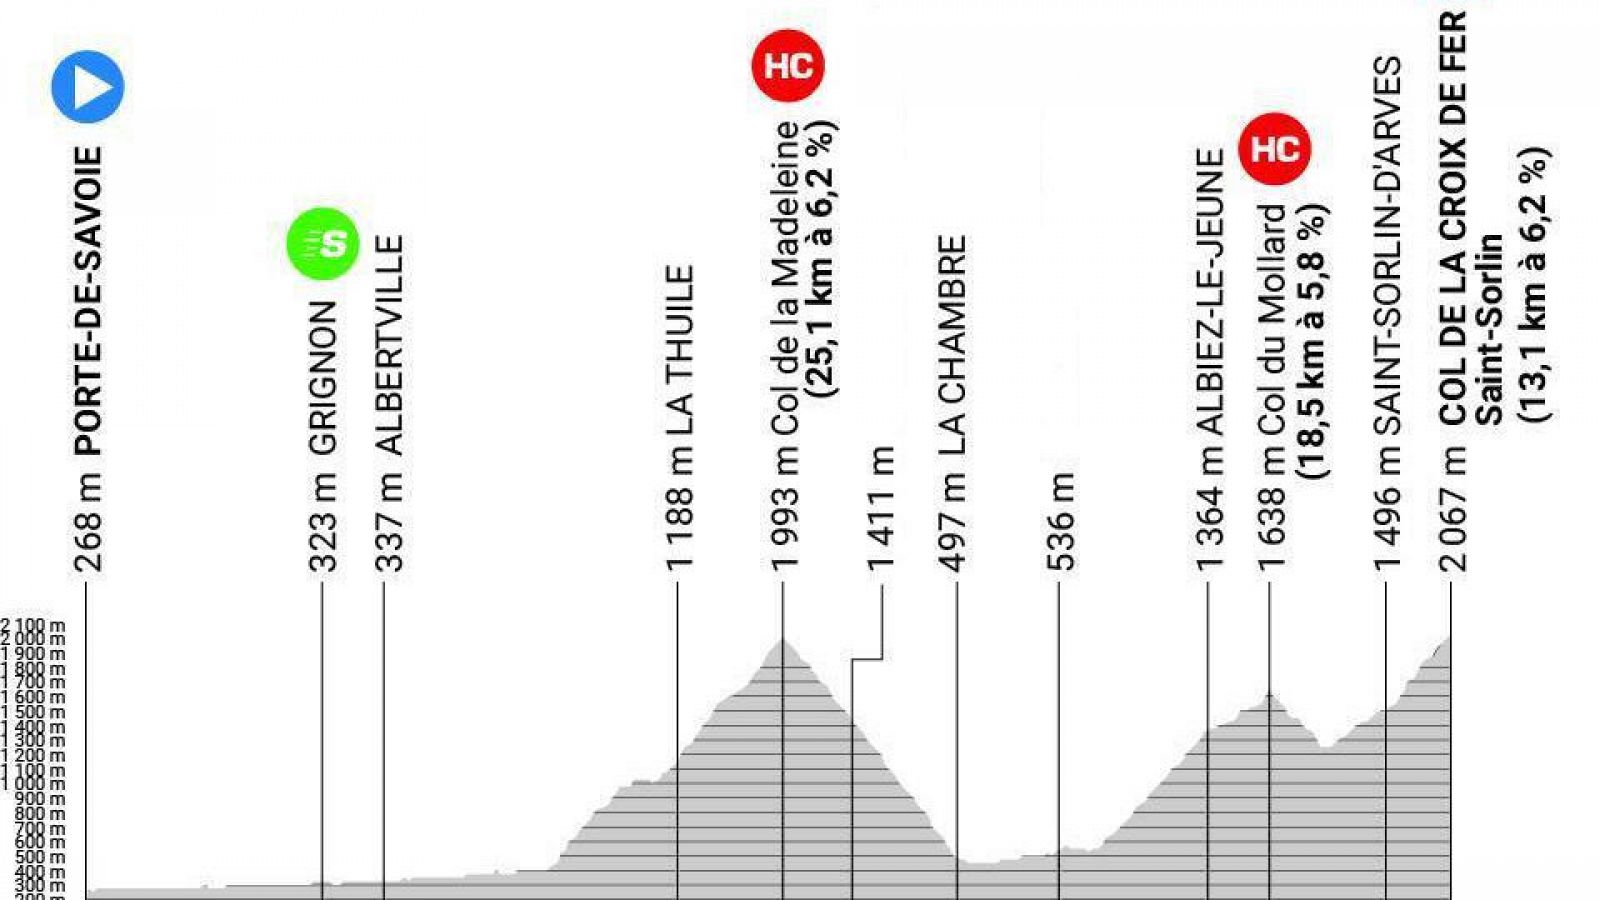 Perfil de la etapa 7 del Criterium Dauphiné 2023 entre Porte de Savoie y Col de la Croix de Fer.